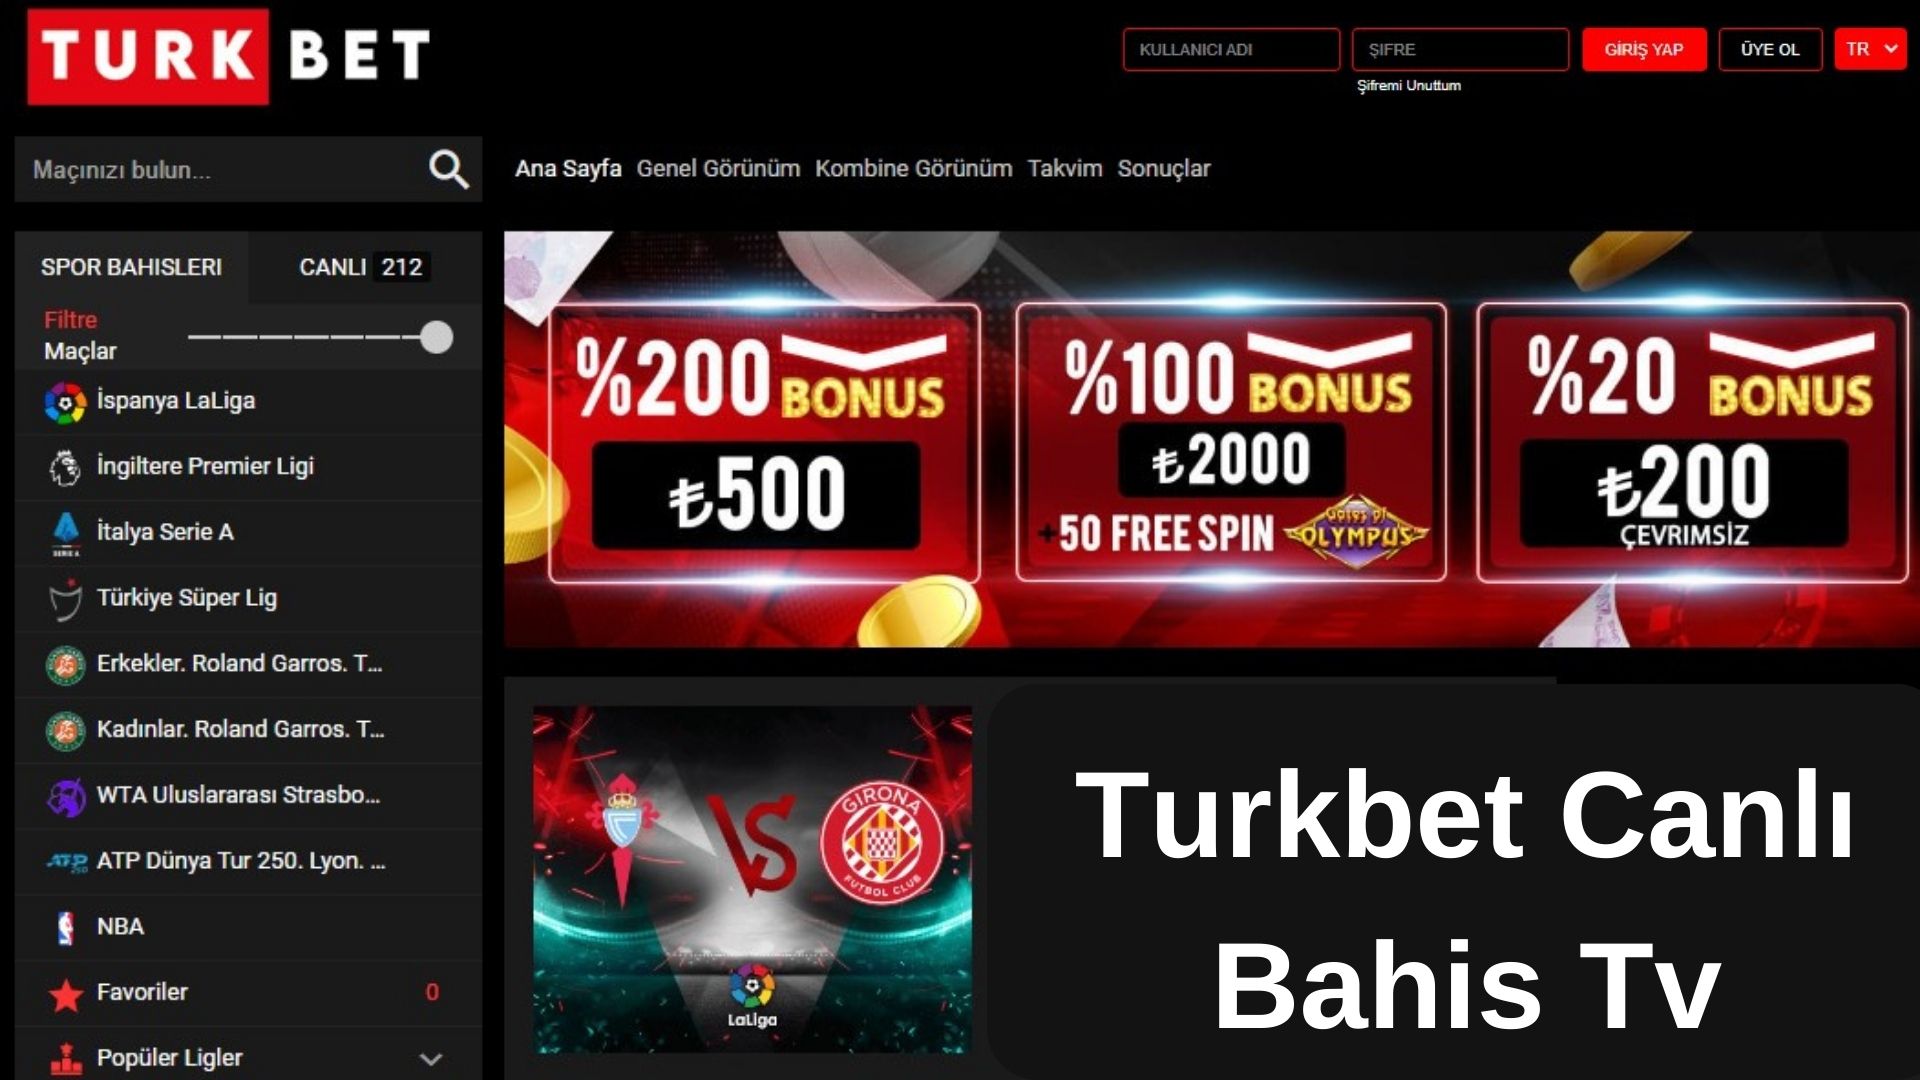 Turkbet Canlı Bahis Tv